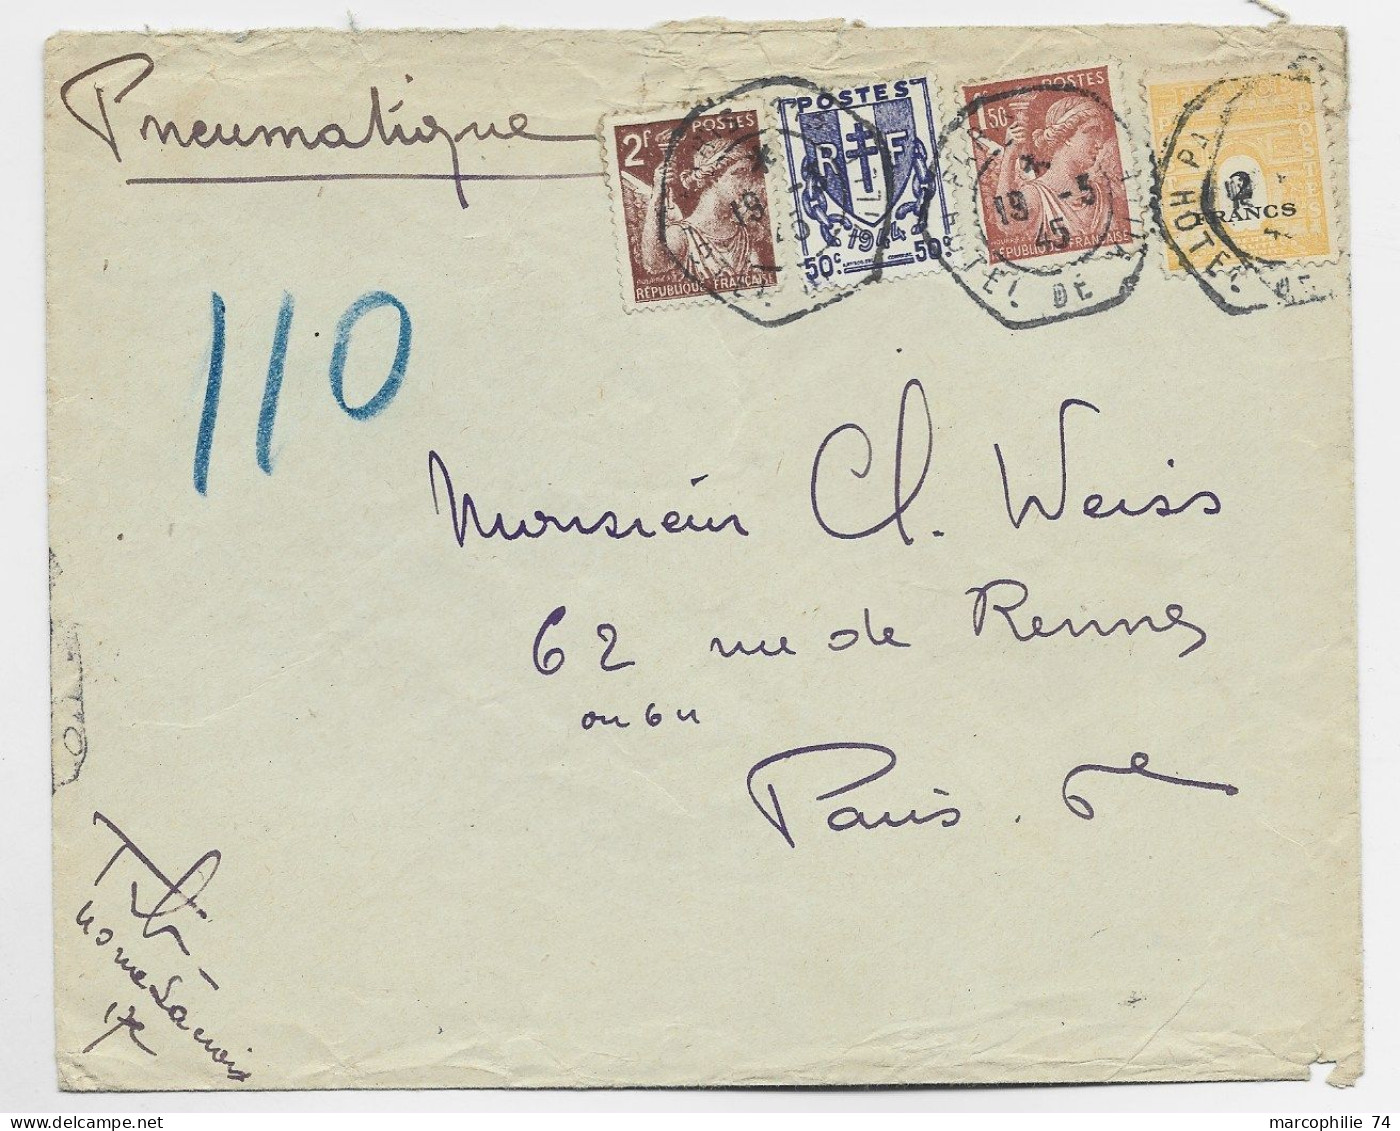 FRANCE ARC TRIOMPHE 2FR+ CHAINE 50C + 2FR+1FR50  PNEUMATIQUE C. HEX PARIS 19.3.1945 HOTEL DE VILLE AU TARIF - 1944-45 Arc De Triomphe